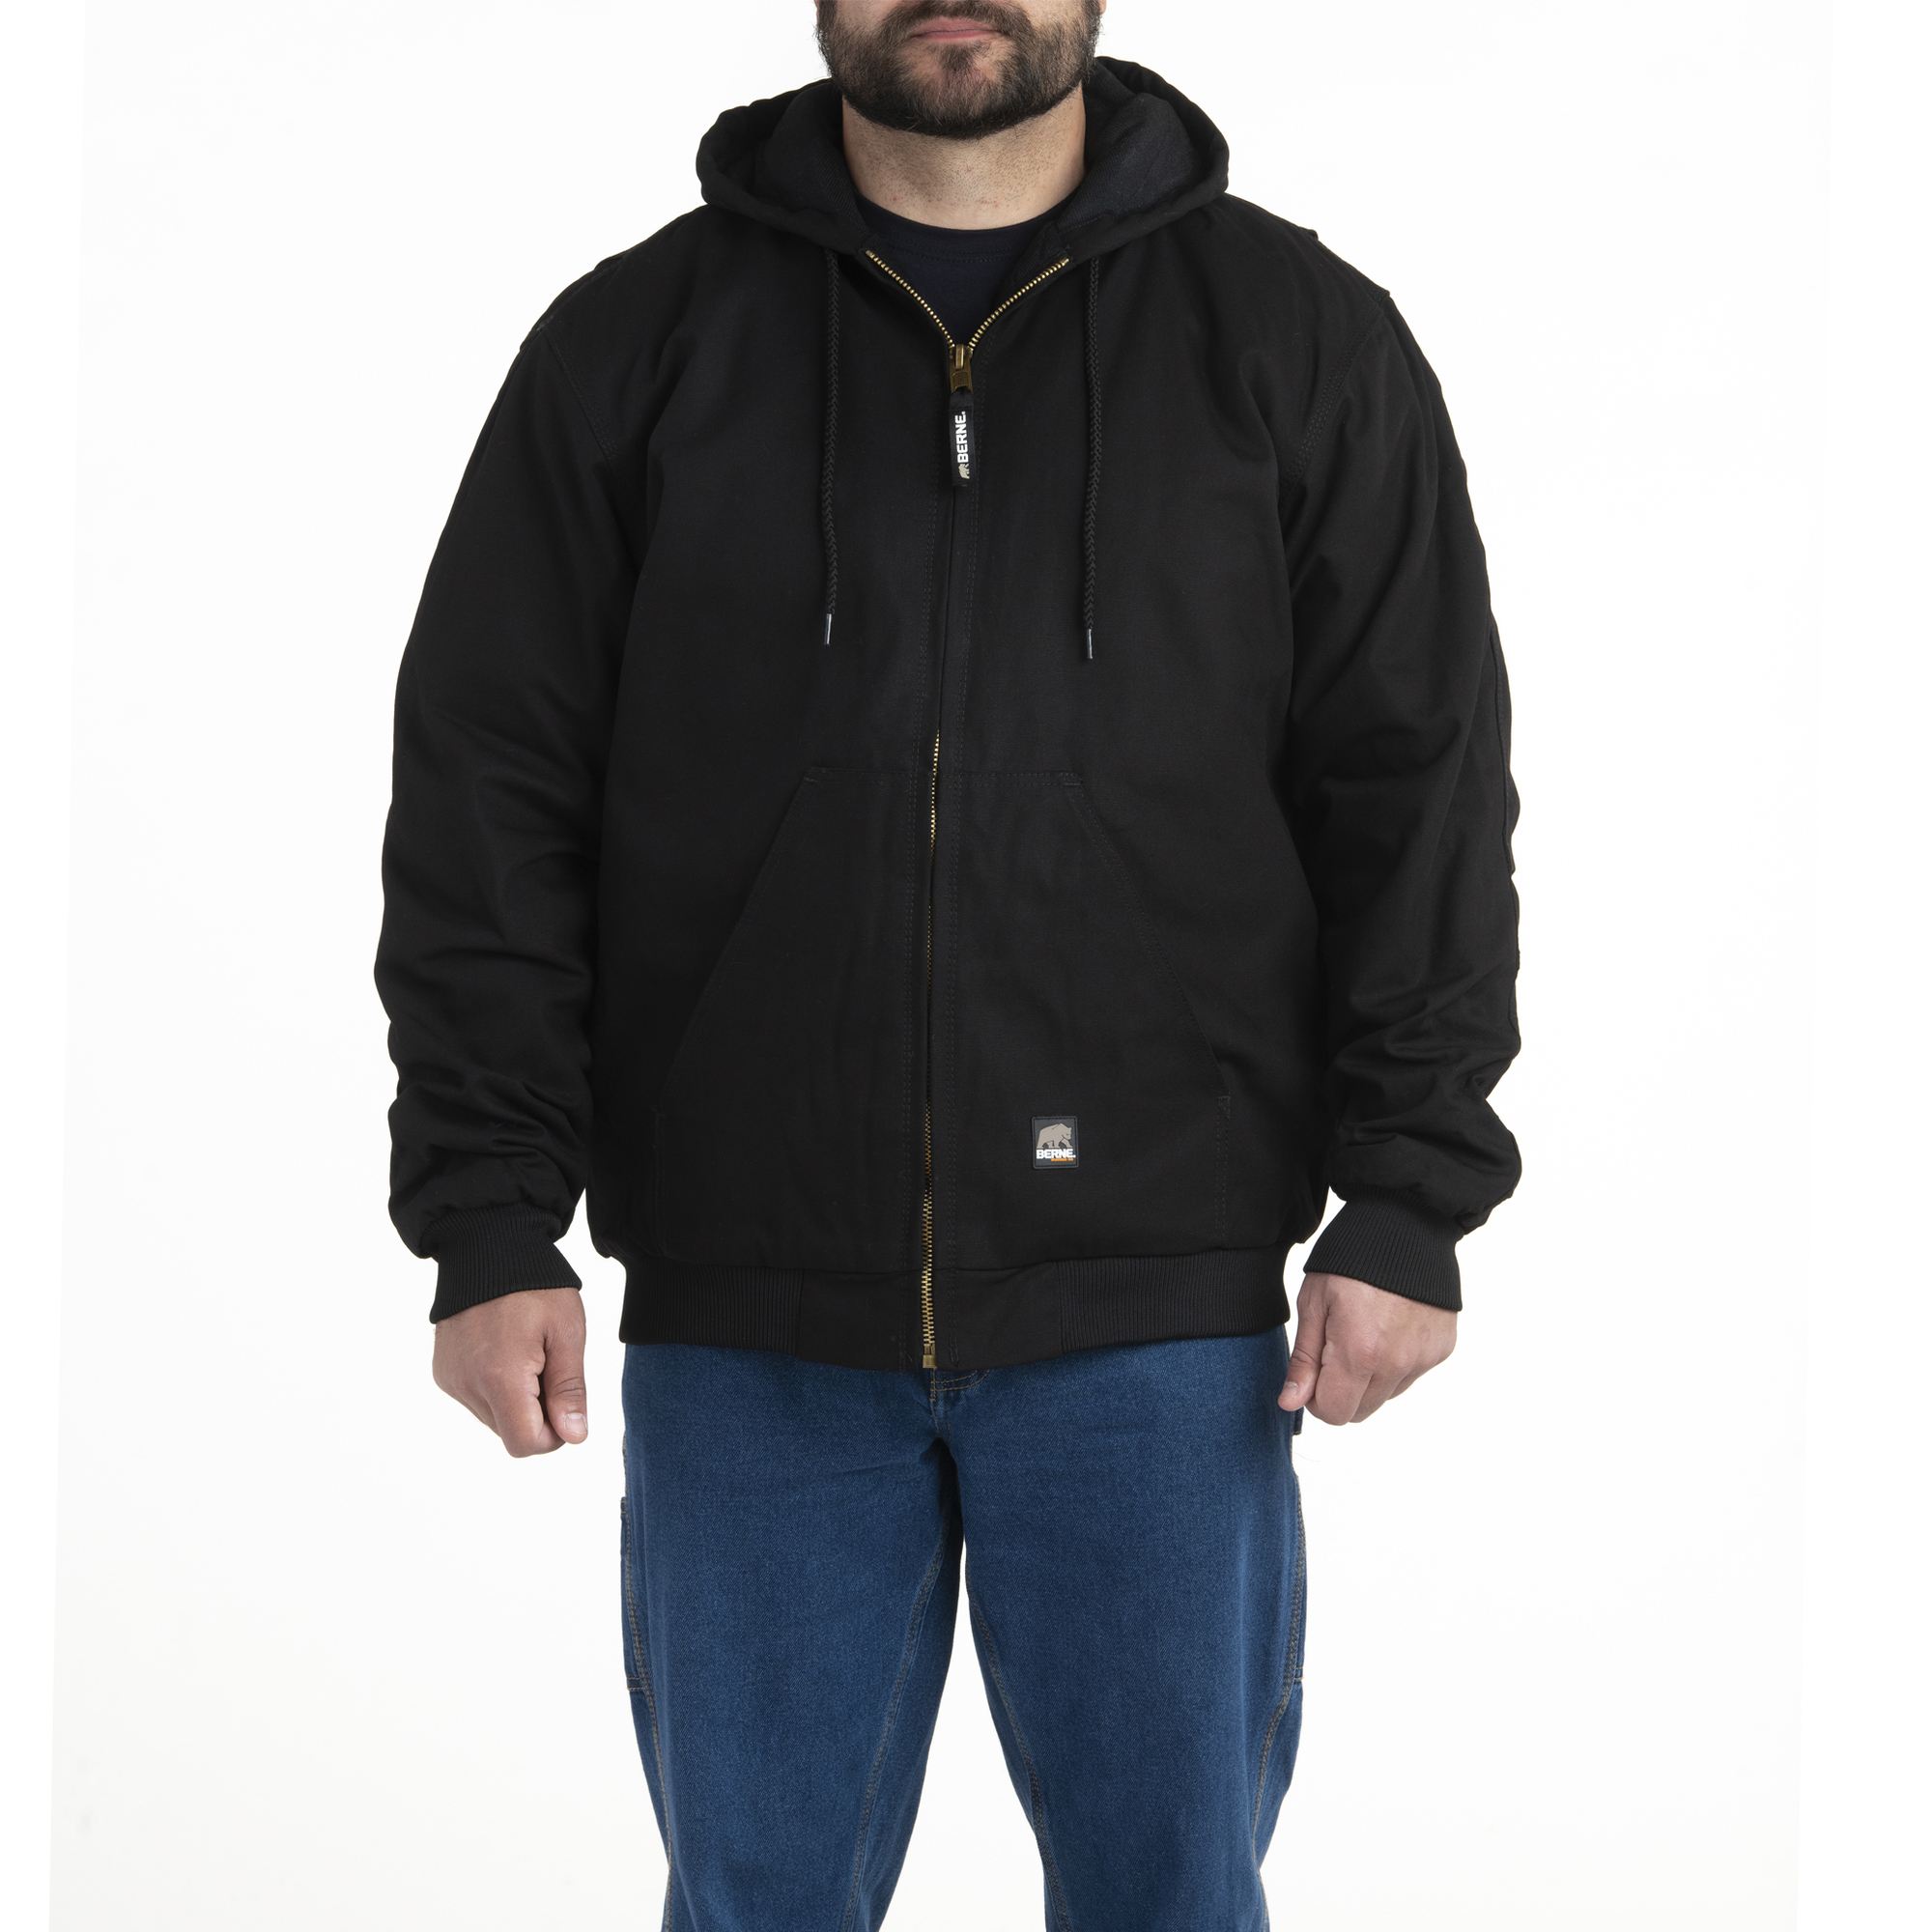 Berne Apparel, Heritage Hooded Jacket, Size L, Color Black, Model HJ51